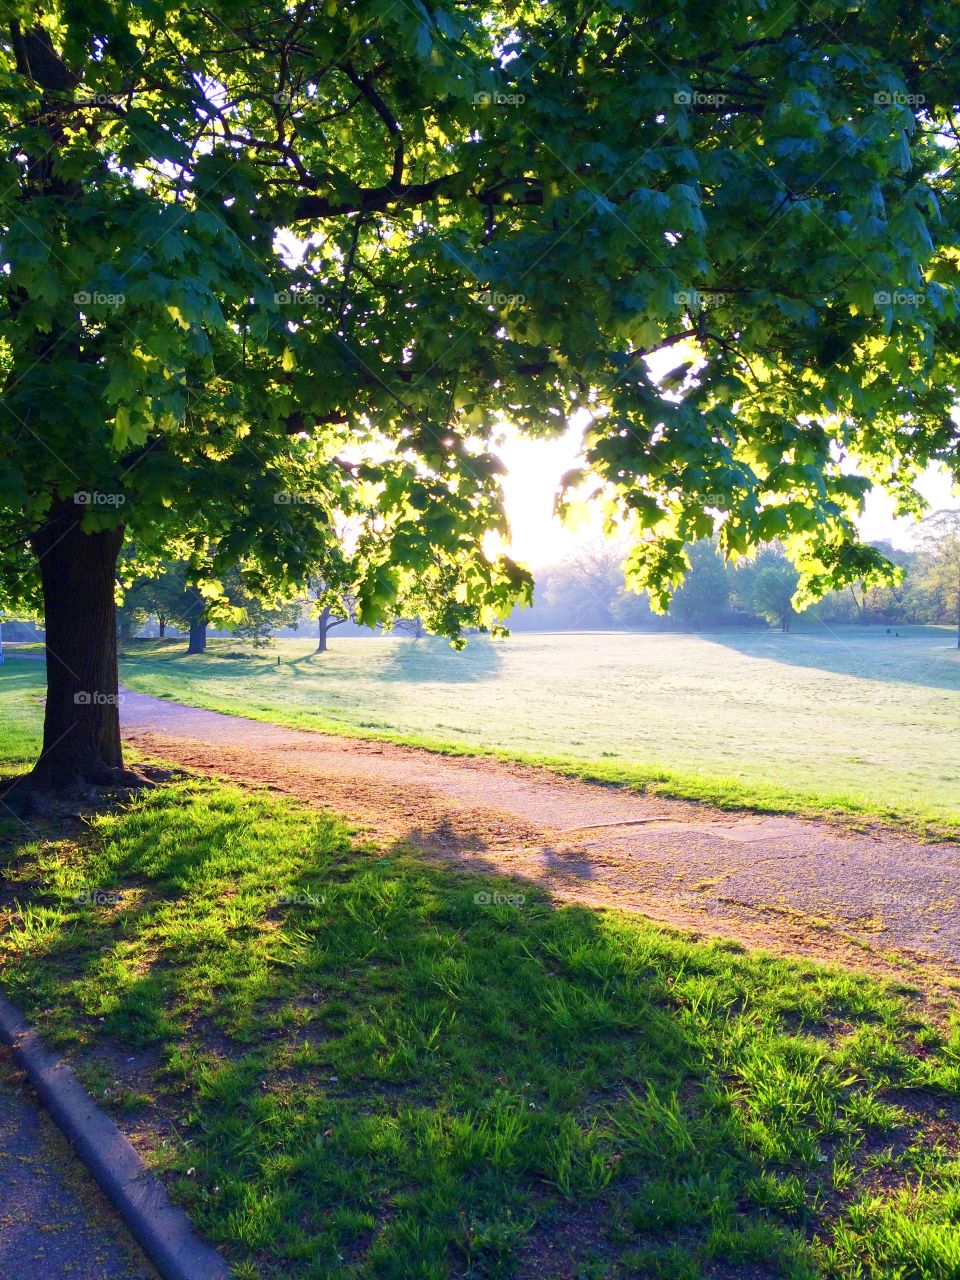 Morning sunrise in the park